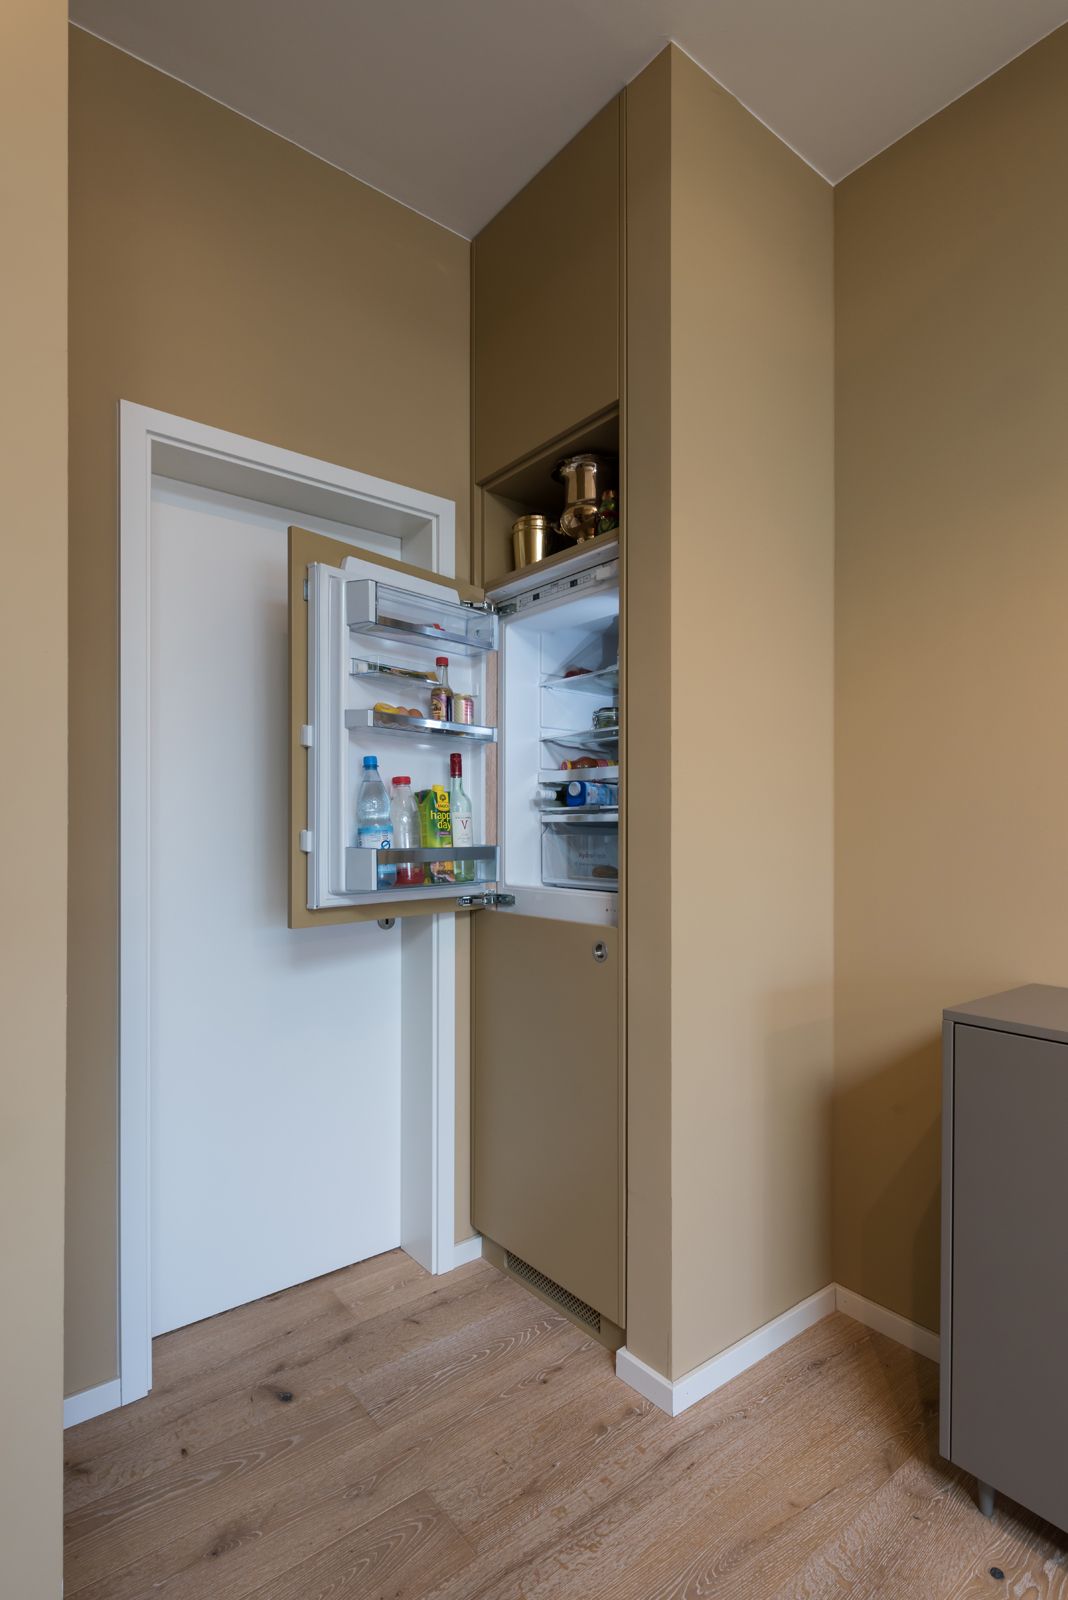 Как спрятать холодильник. как спрятать холодильник в комнате, на кухне, в шкафу. способы как спрятать холодильник на кухне, в комнате, в шкафу, на лоджии, в кладовой комнате.информационный строительный сайт